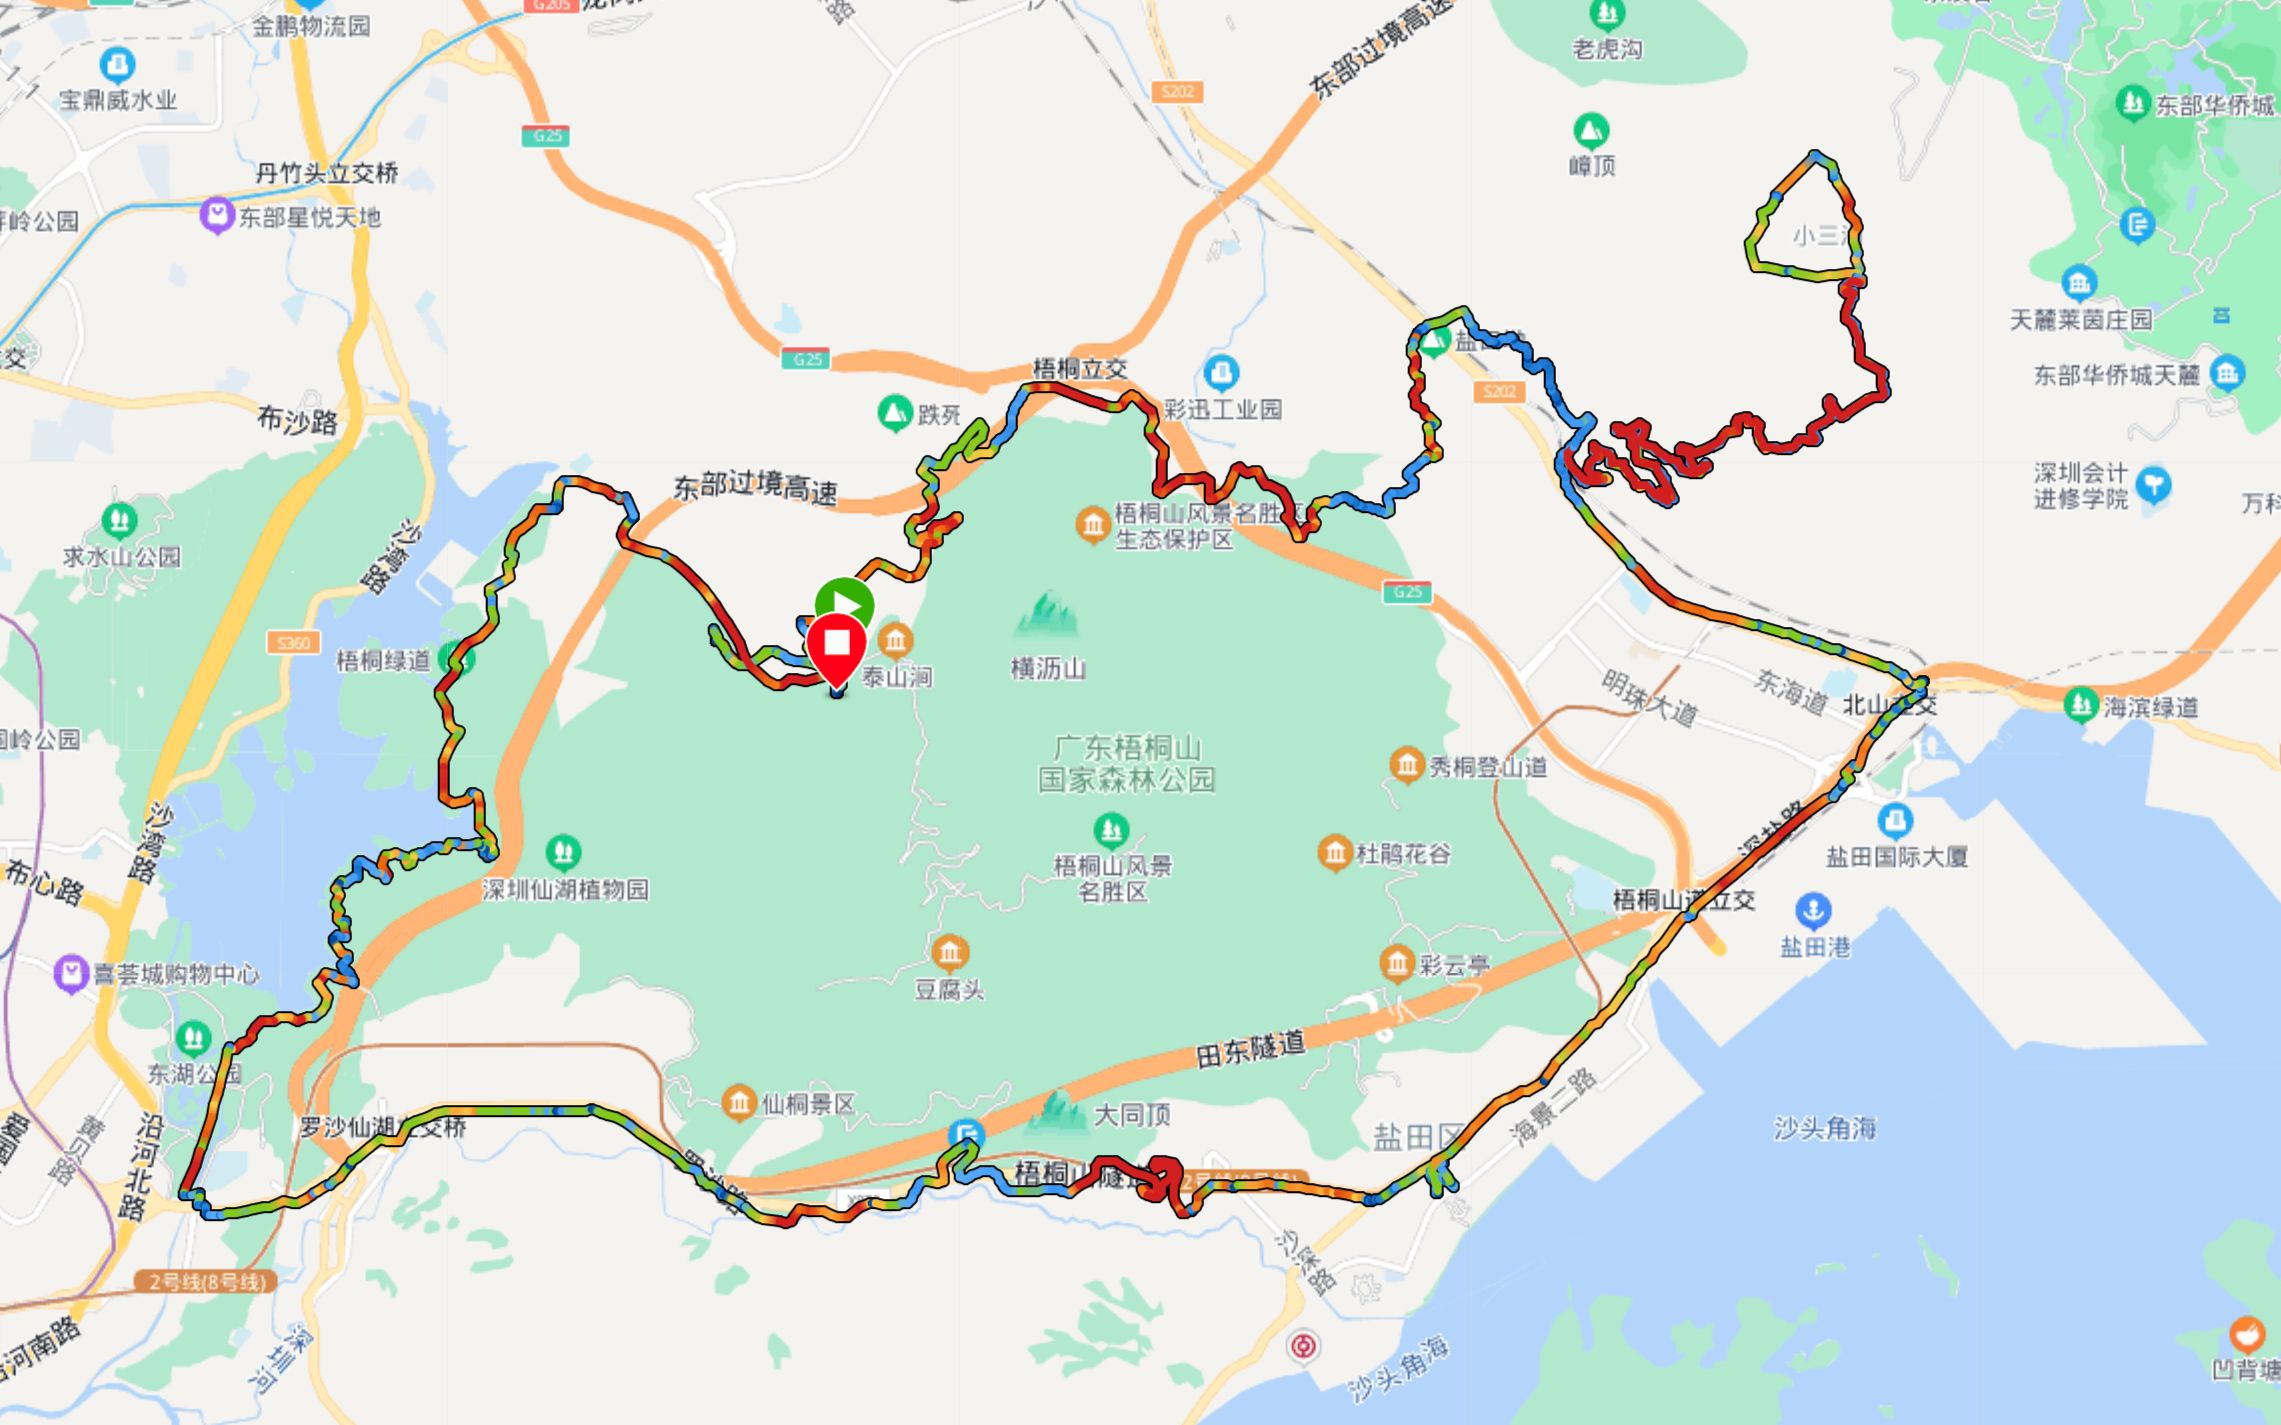 深圳宝藏骑行路线:环梧桐山70km记录(1/4)东湖公园梧桐绿道